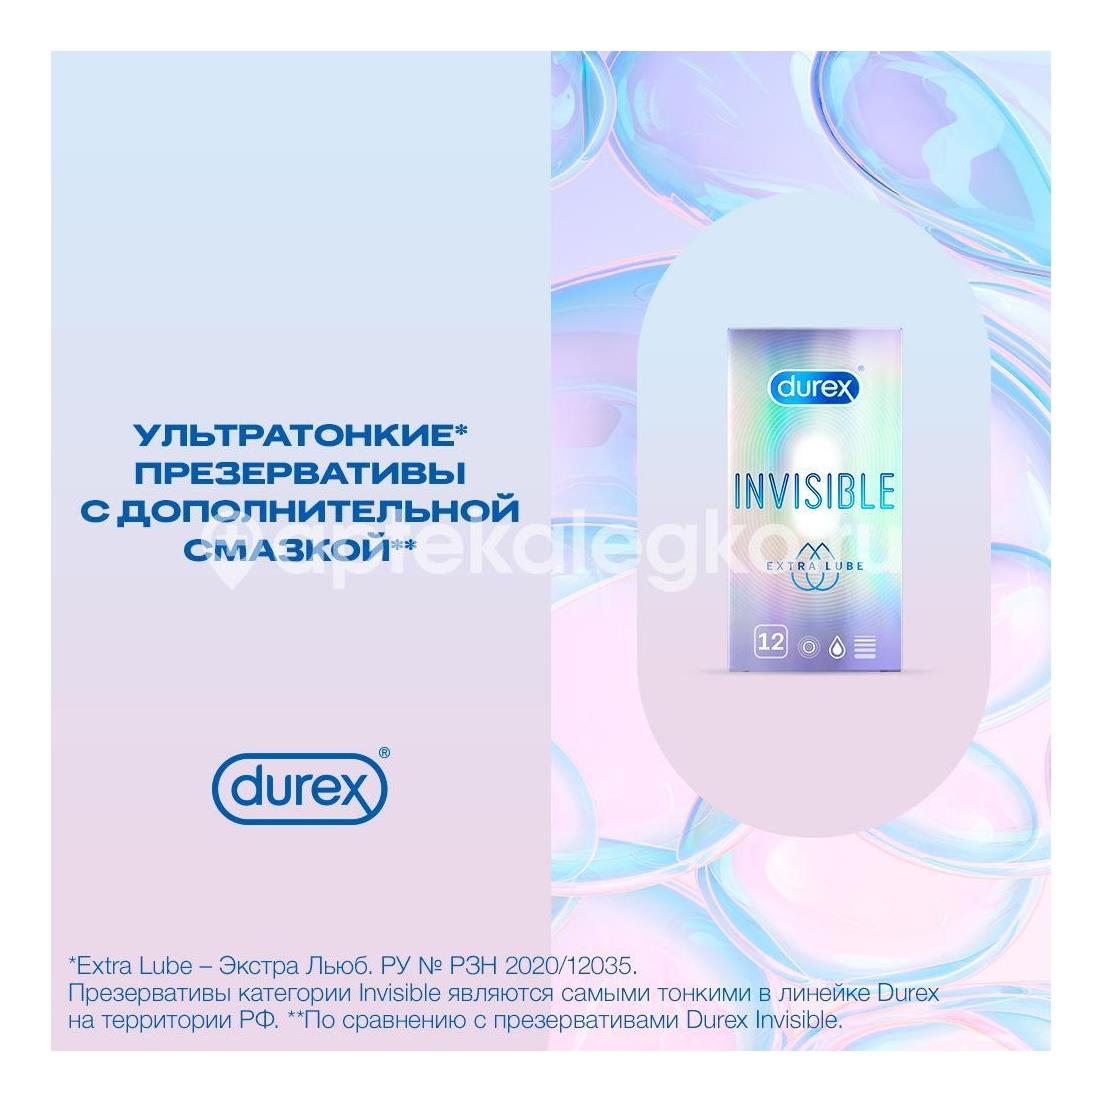 Дюрекс презерватив invisible extra lube №12 [durex] - 5